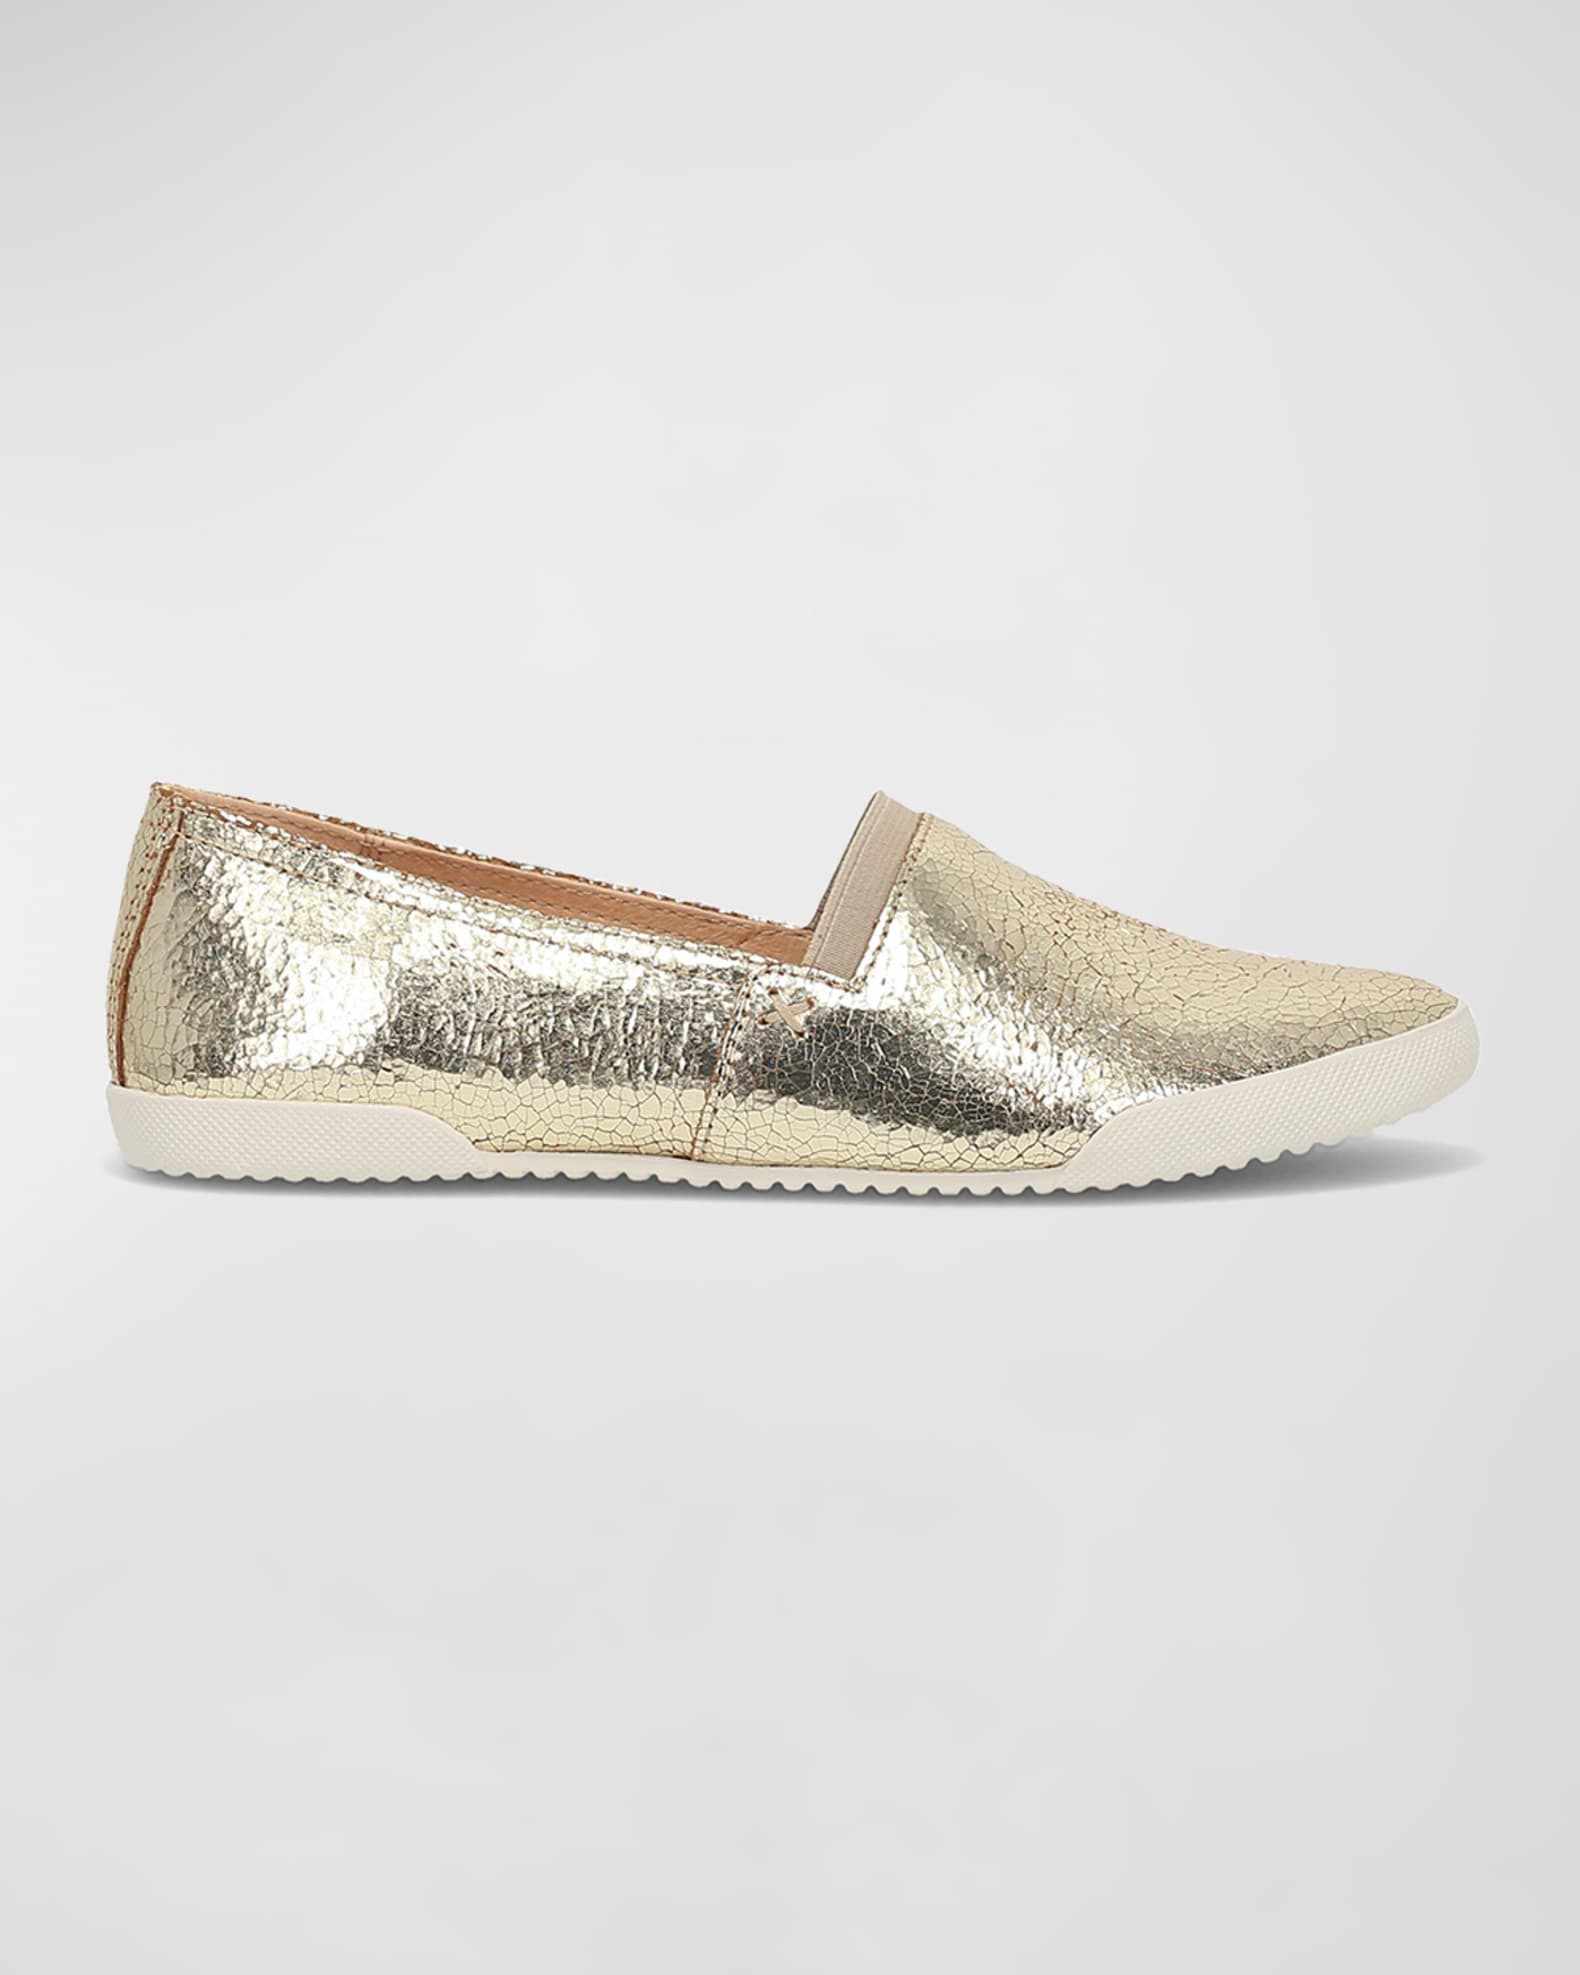 Frye Melanie Leather Slip-On Sneakers | Neiman Marcus